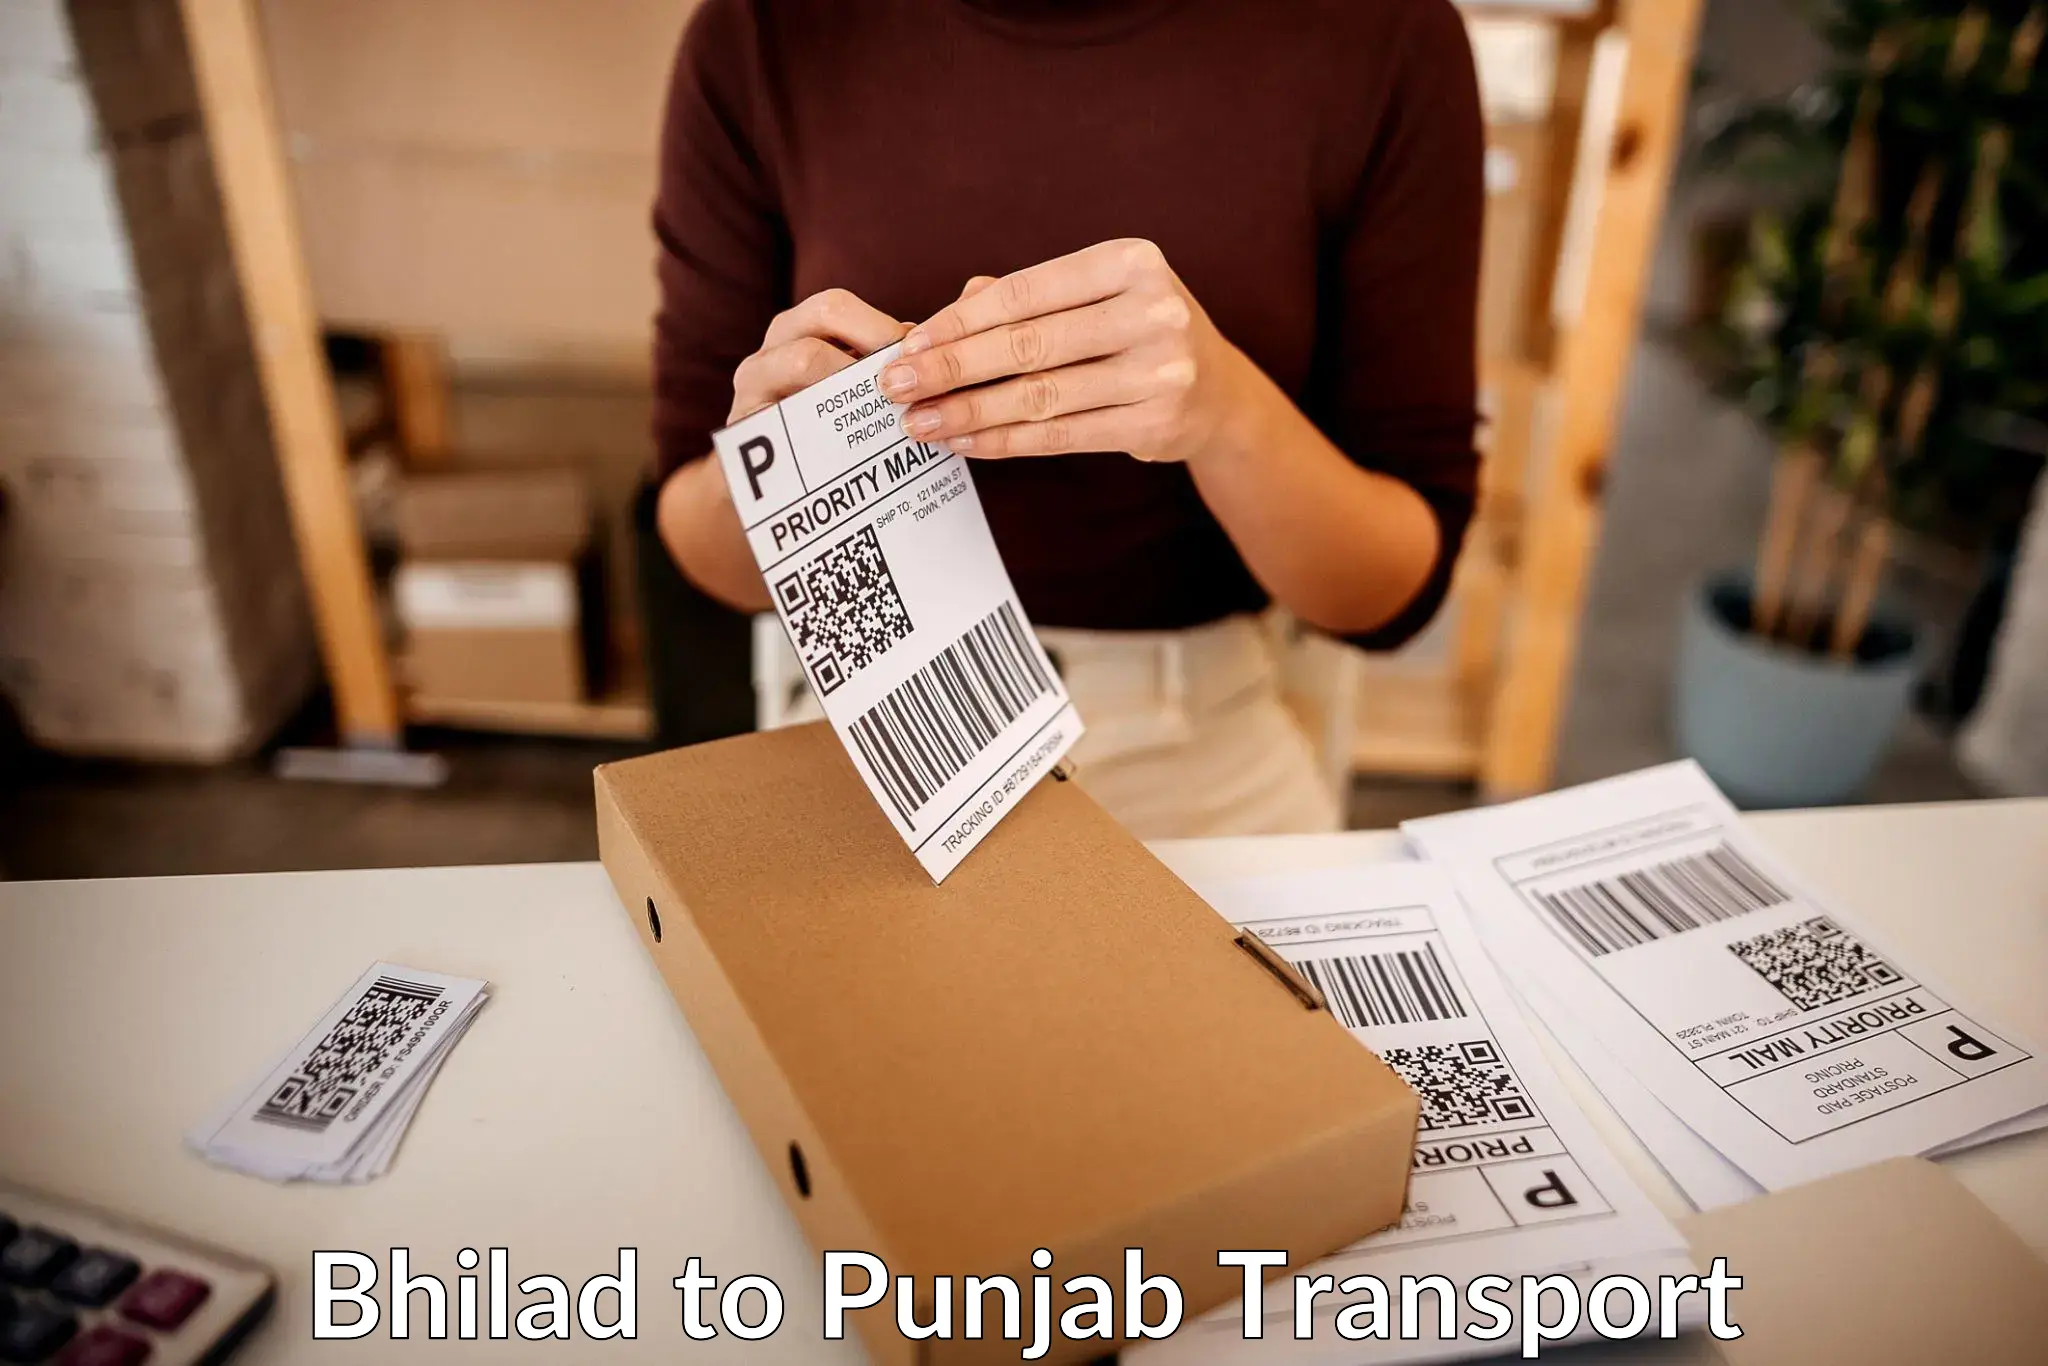 Transport shared services Bhilad to Punjab